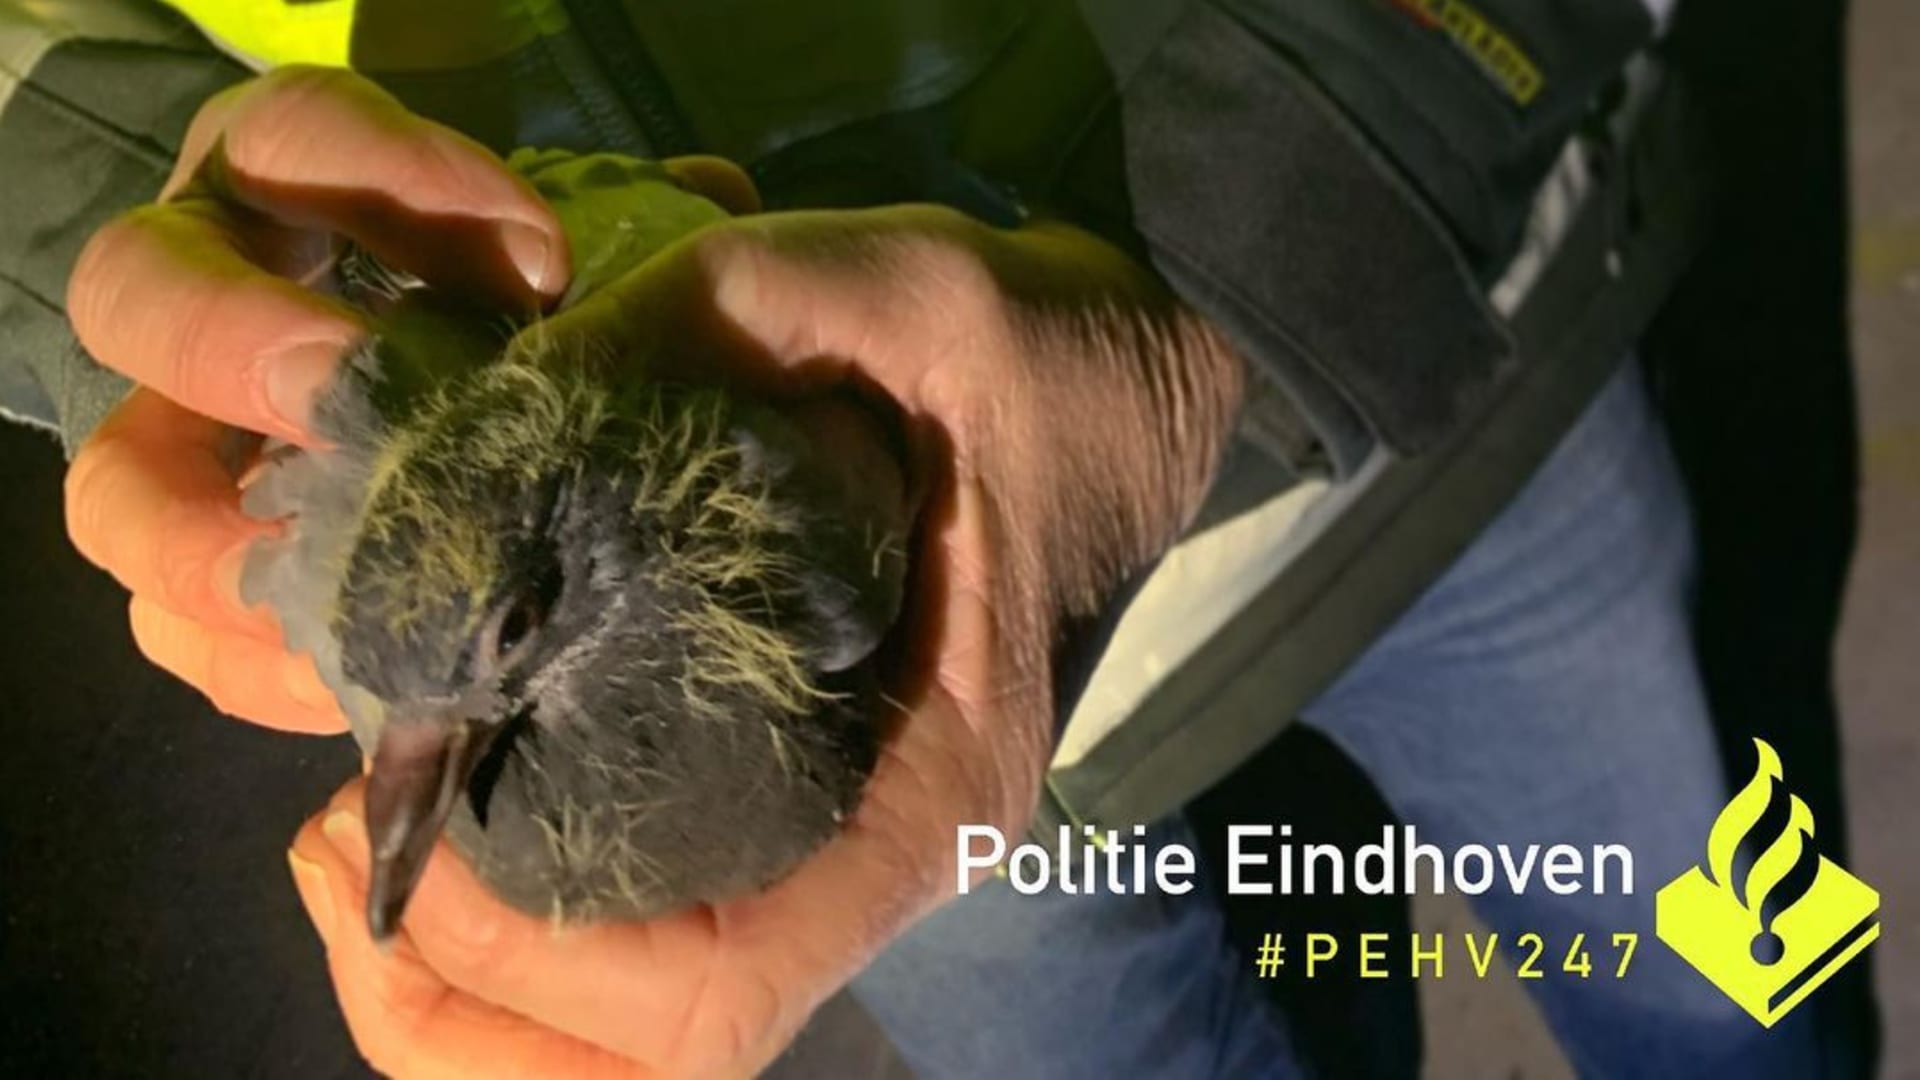 Vijf uitgehongerde duiven gered uit afgesloten pand in Eindhoven